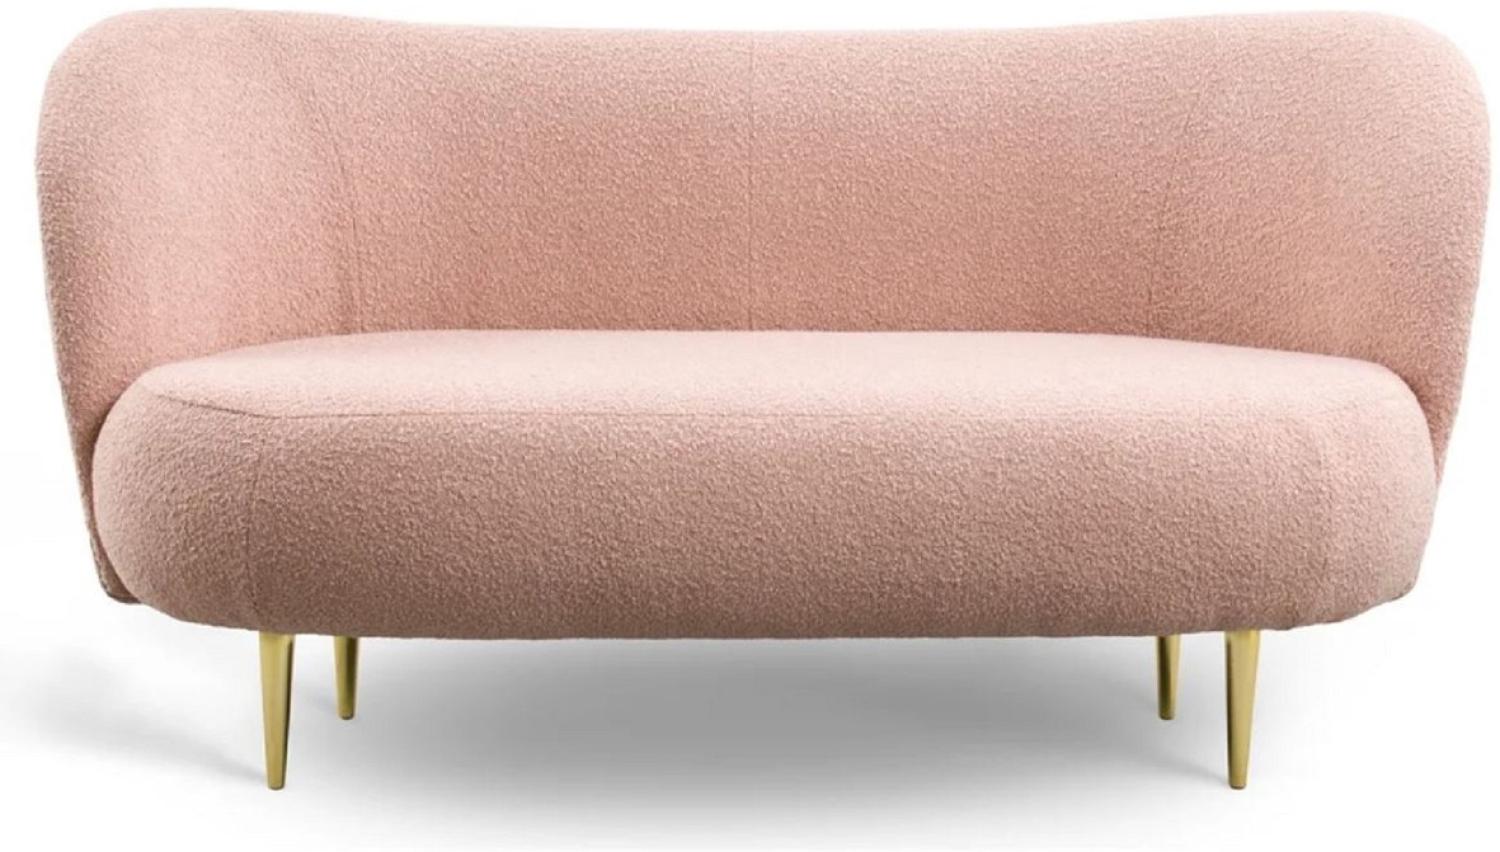 Casa Padrino Luxus 3er Sofa Rosa / Gold 180 x 72 x H. 80 cm - Wohnzimmer Sofa mit gebogener Rückenlehne - Wohnzimmer Möbel - Luxus Möbel - Wohnzimmer Einrichtung - Luxus Einrichtung Bild 1